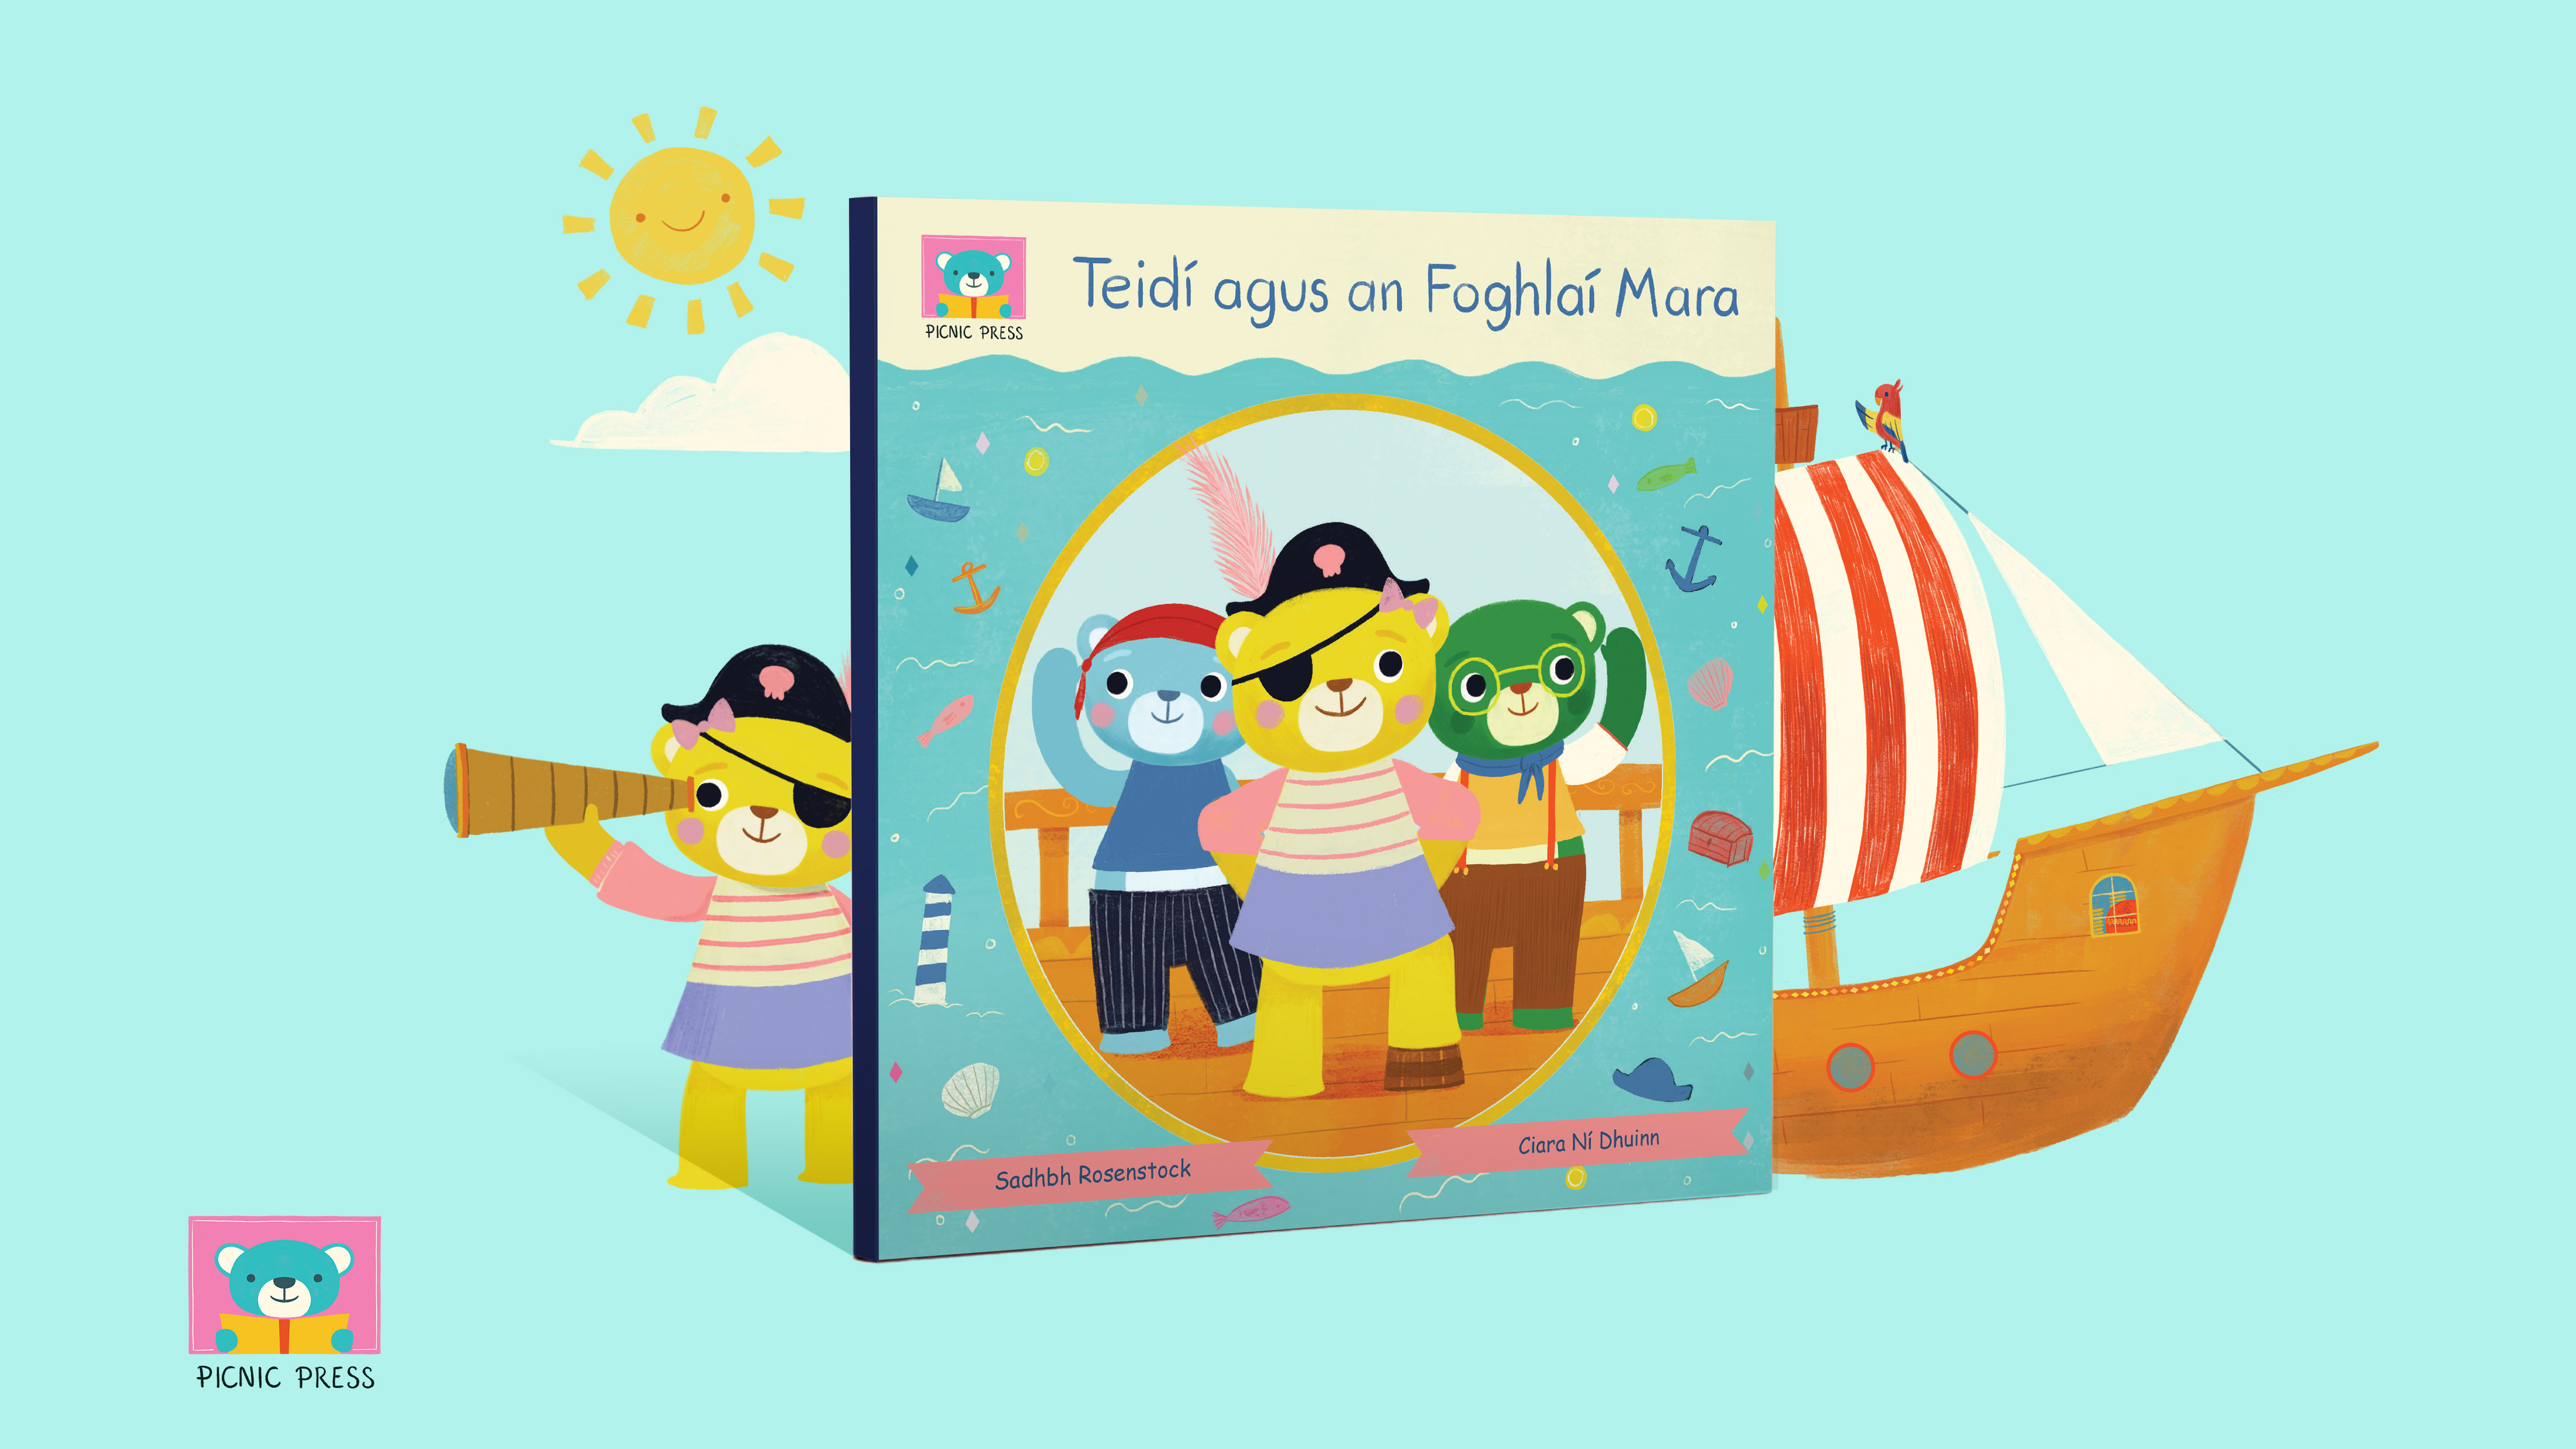 Teidí agus an Foghlaí Mara leabhar/book